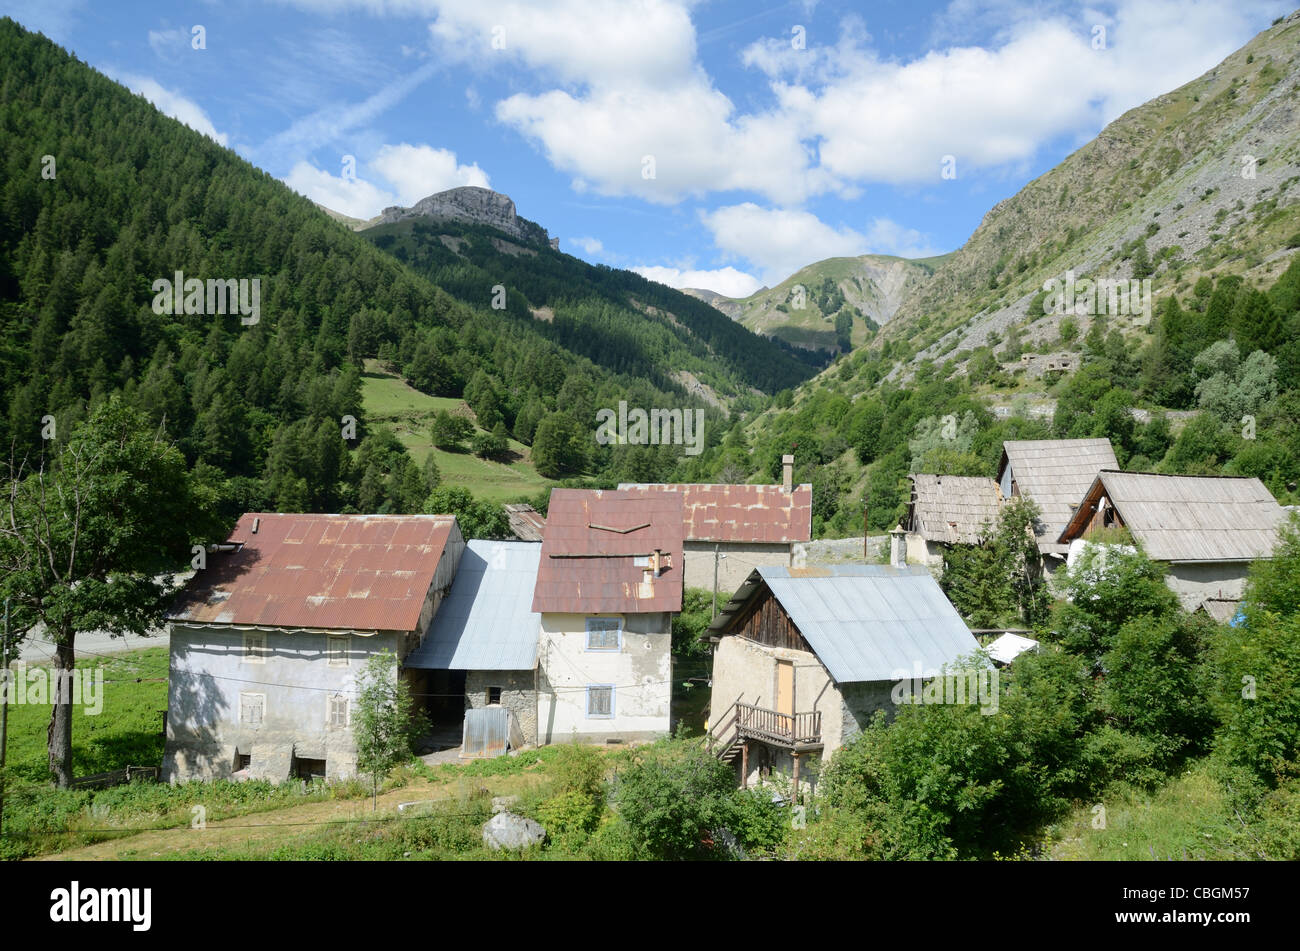 Le Pra Hamlet or Alpine Village, Saint Dalmas-le-Selvage, Tinée Valley, Route de la Bonette, Alpes-Maritimes, France Stock Photo